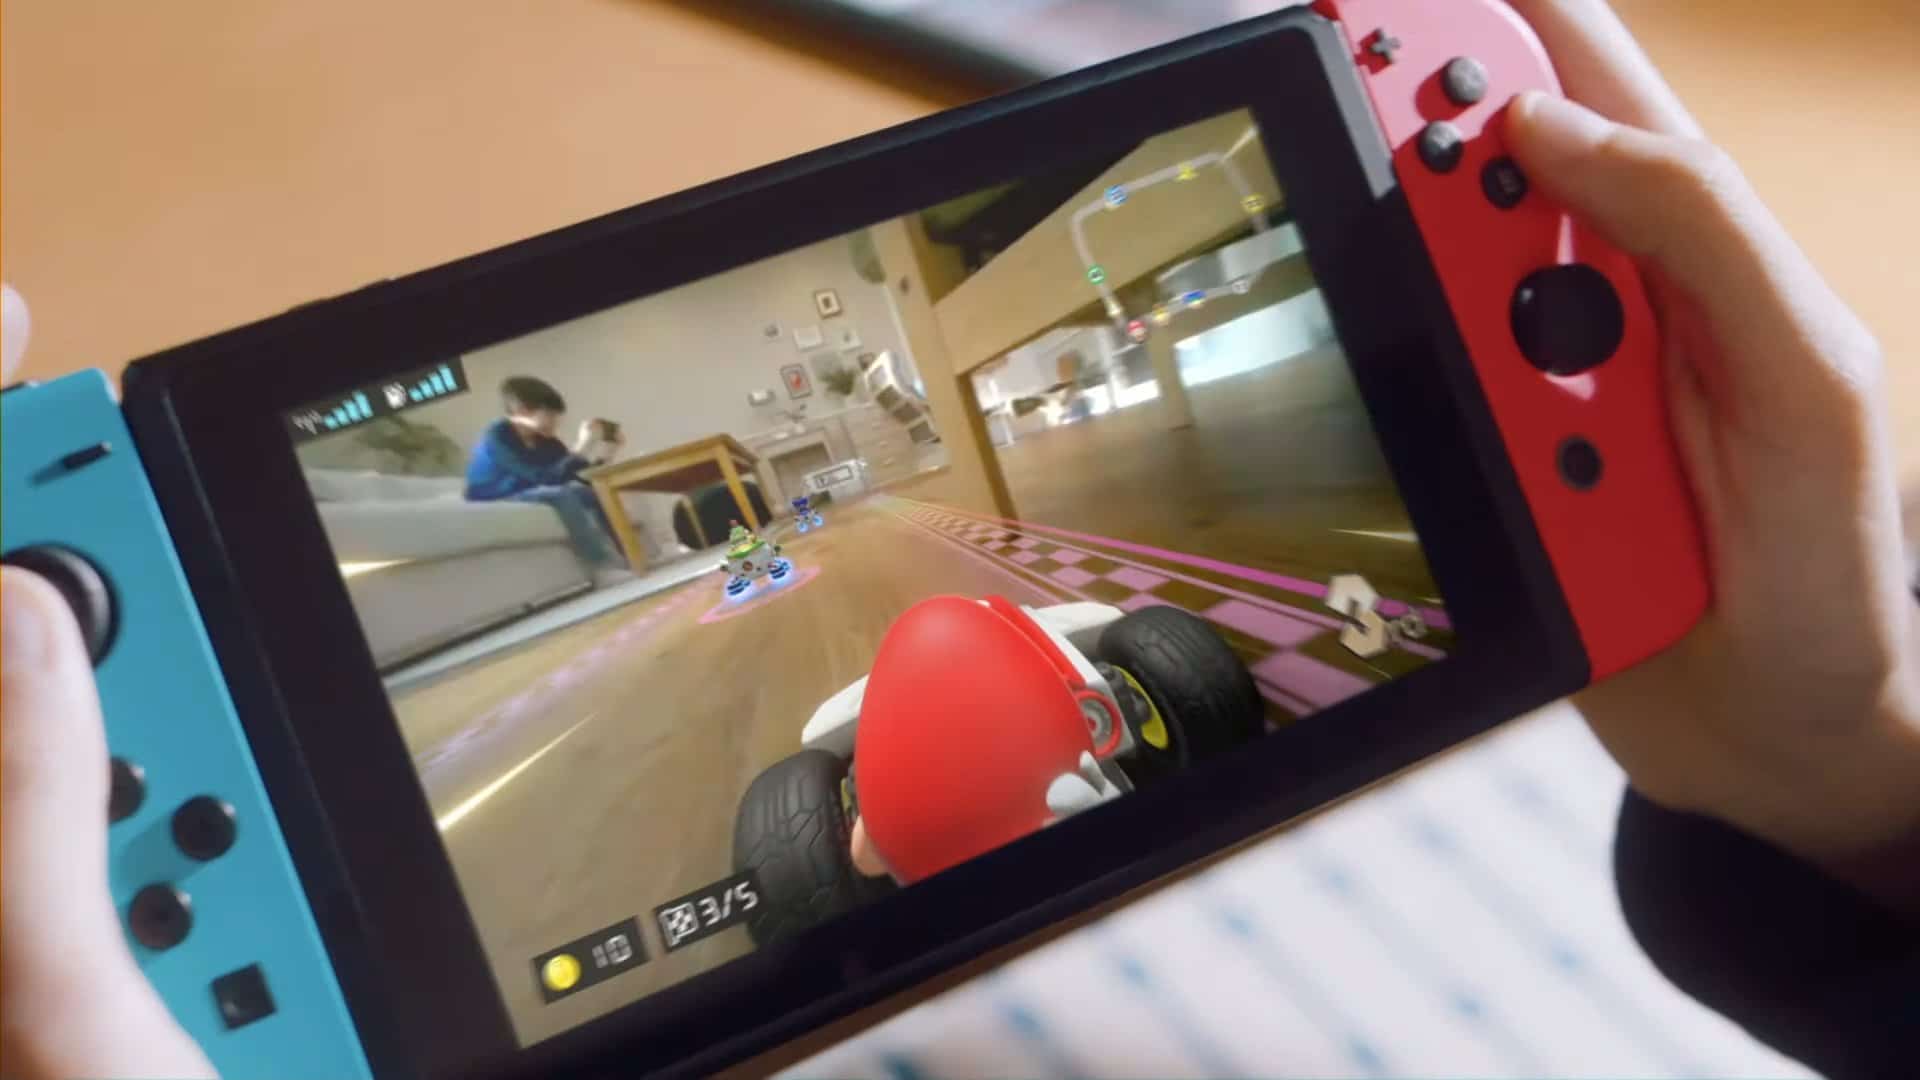 Mario Kart Live Home Circuit se lanzará el 16 de octubre en Nintendo Switch